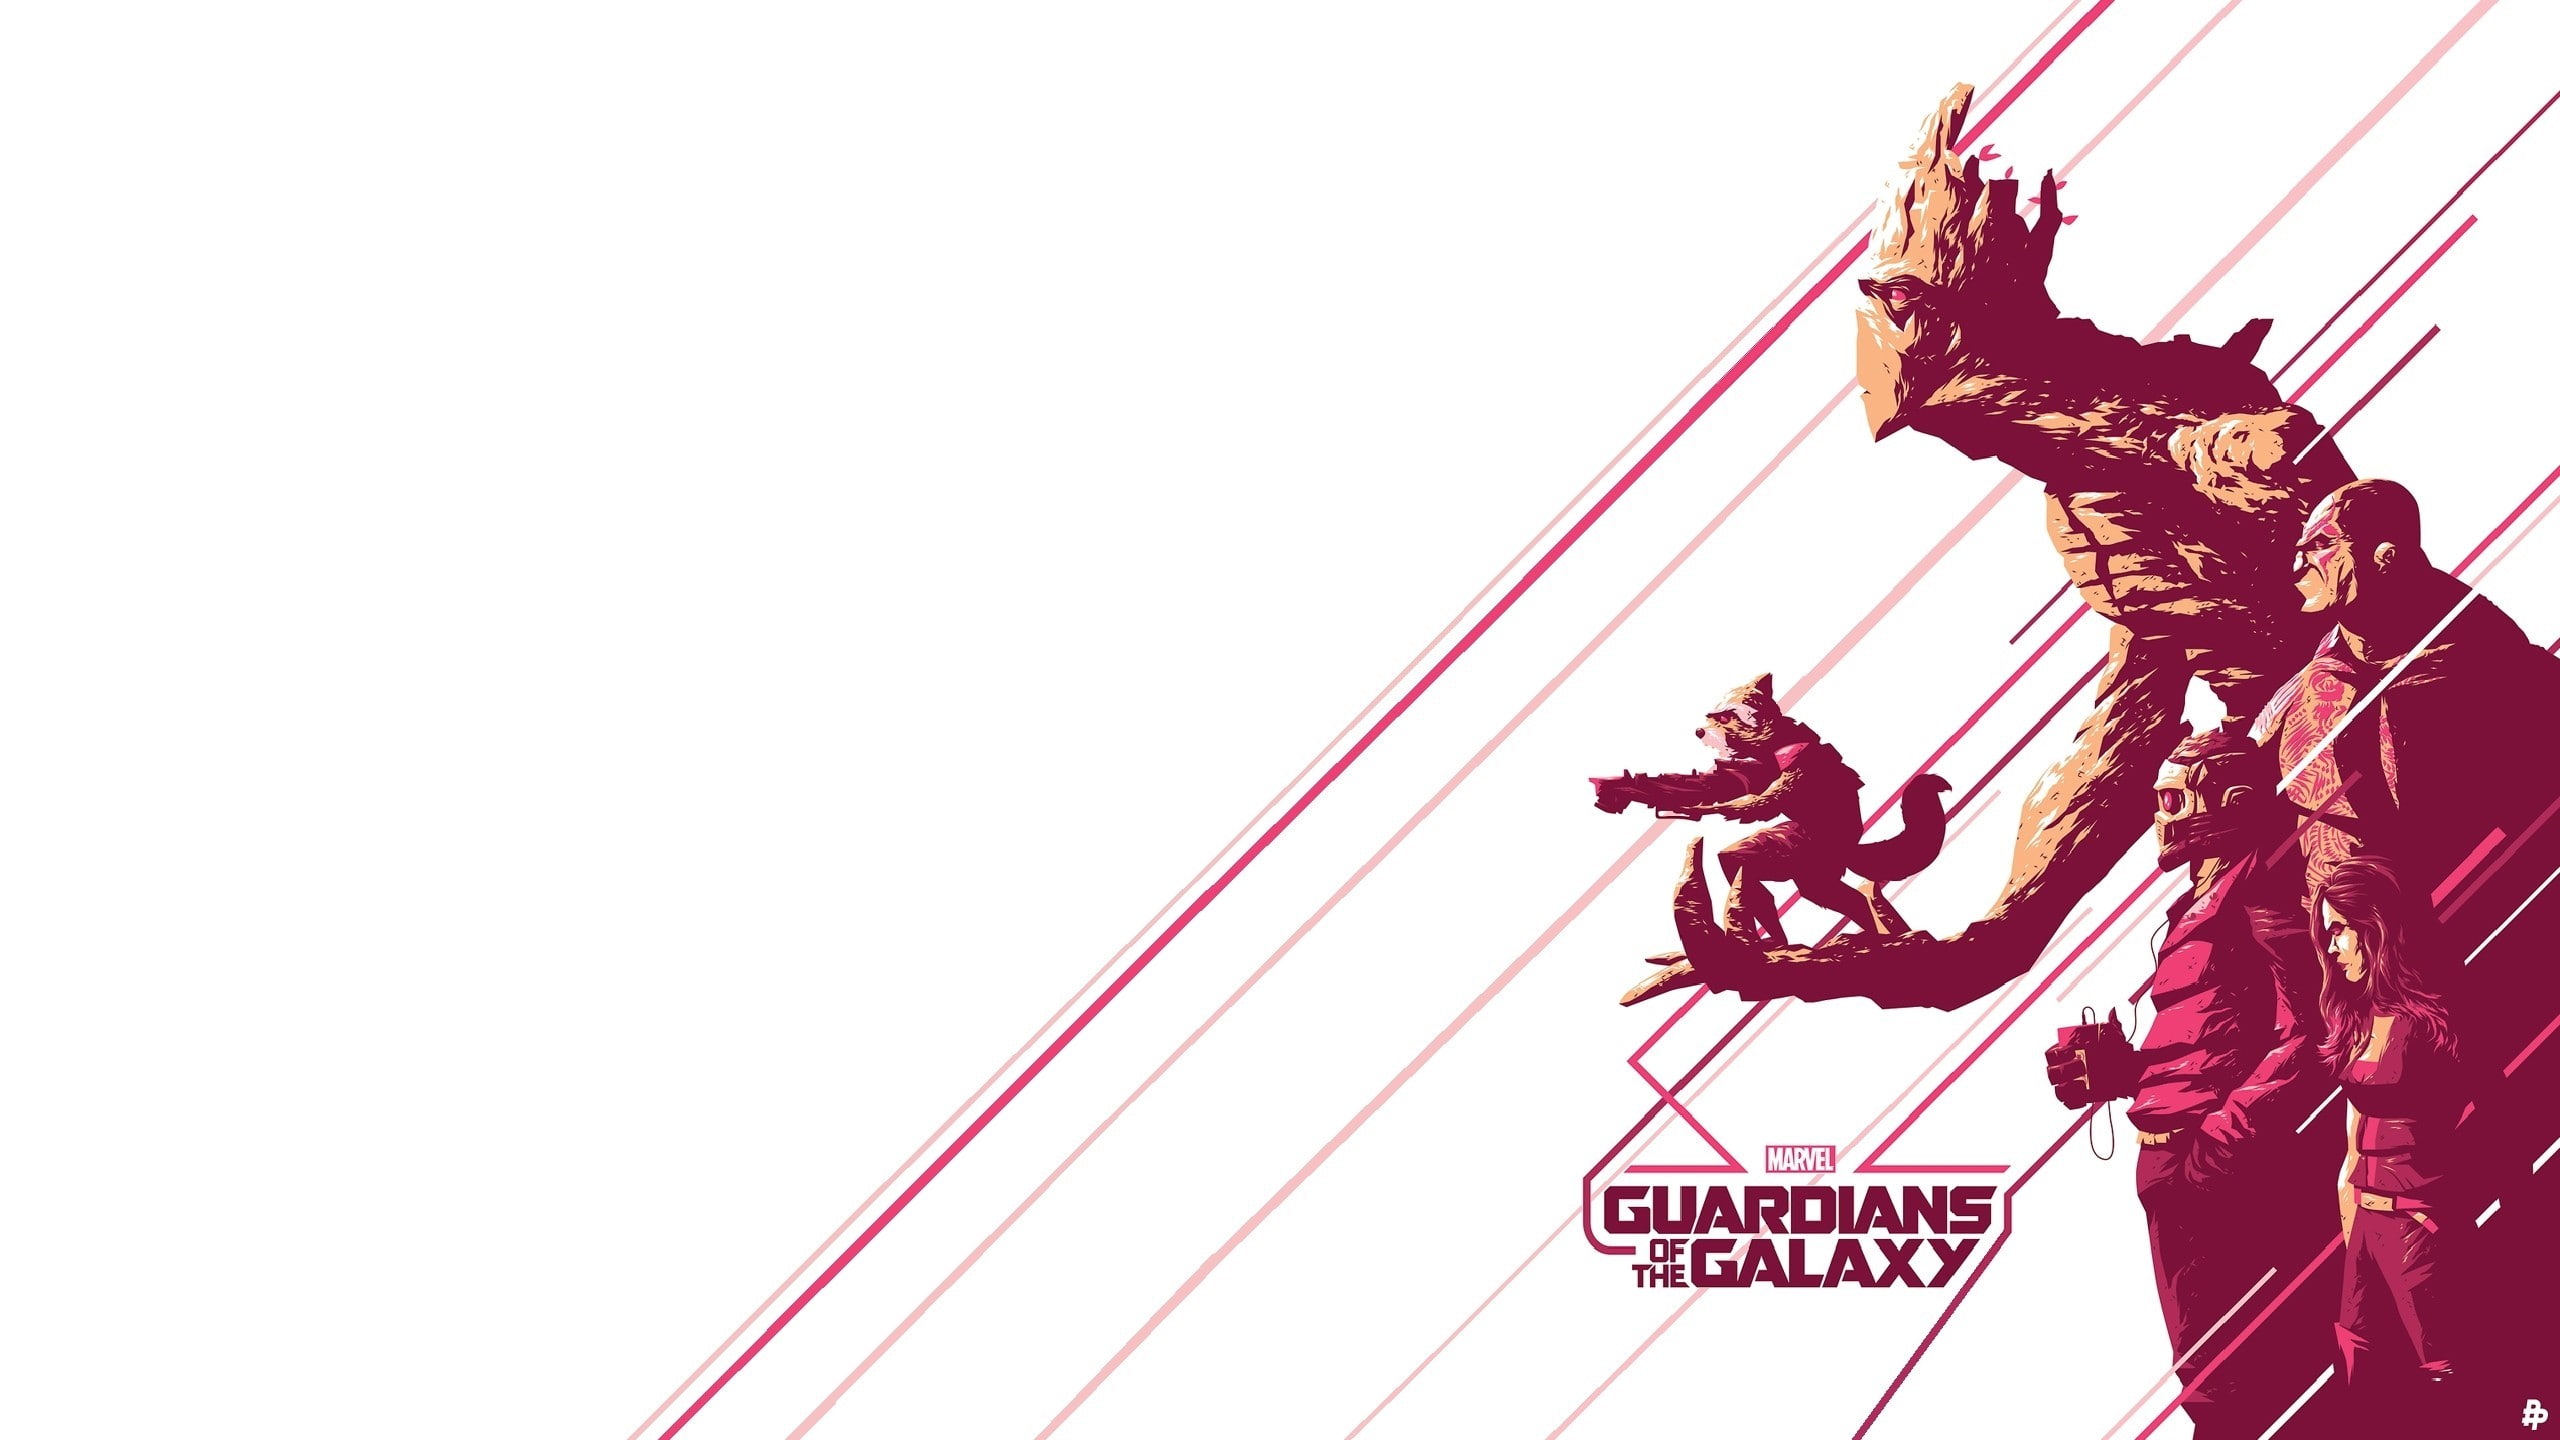 guardians of the galaxy star lord gamora rocket raccoon groot